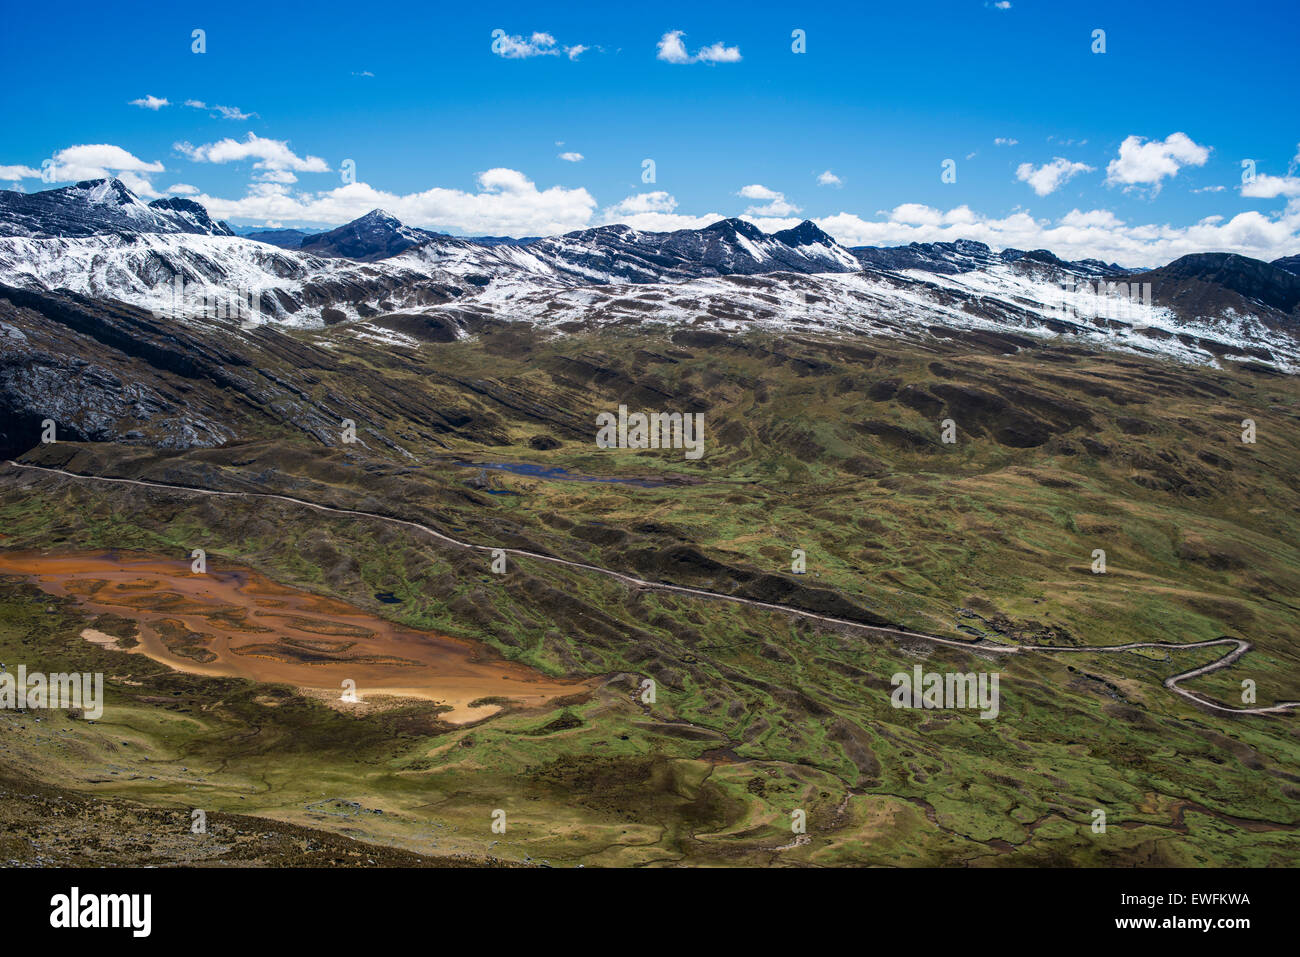 Les montagnes enneigées et col de montagne, Cordillera Huayhuash mountain range, les Andes, le nord du Pérou, Pérou Banque D'Images